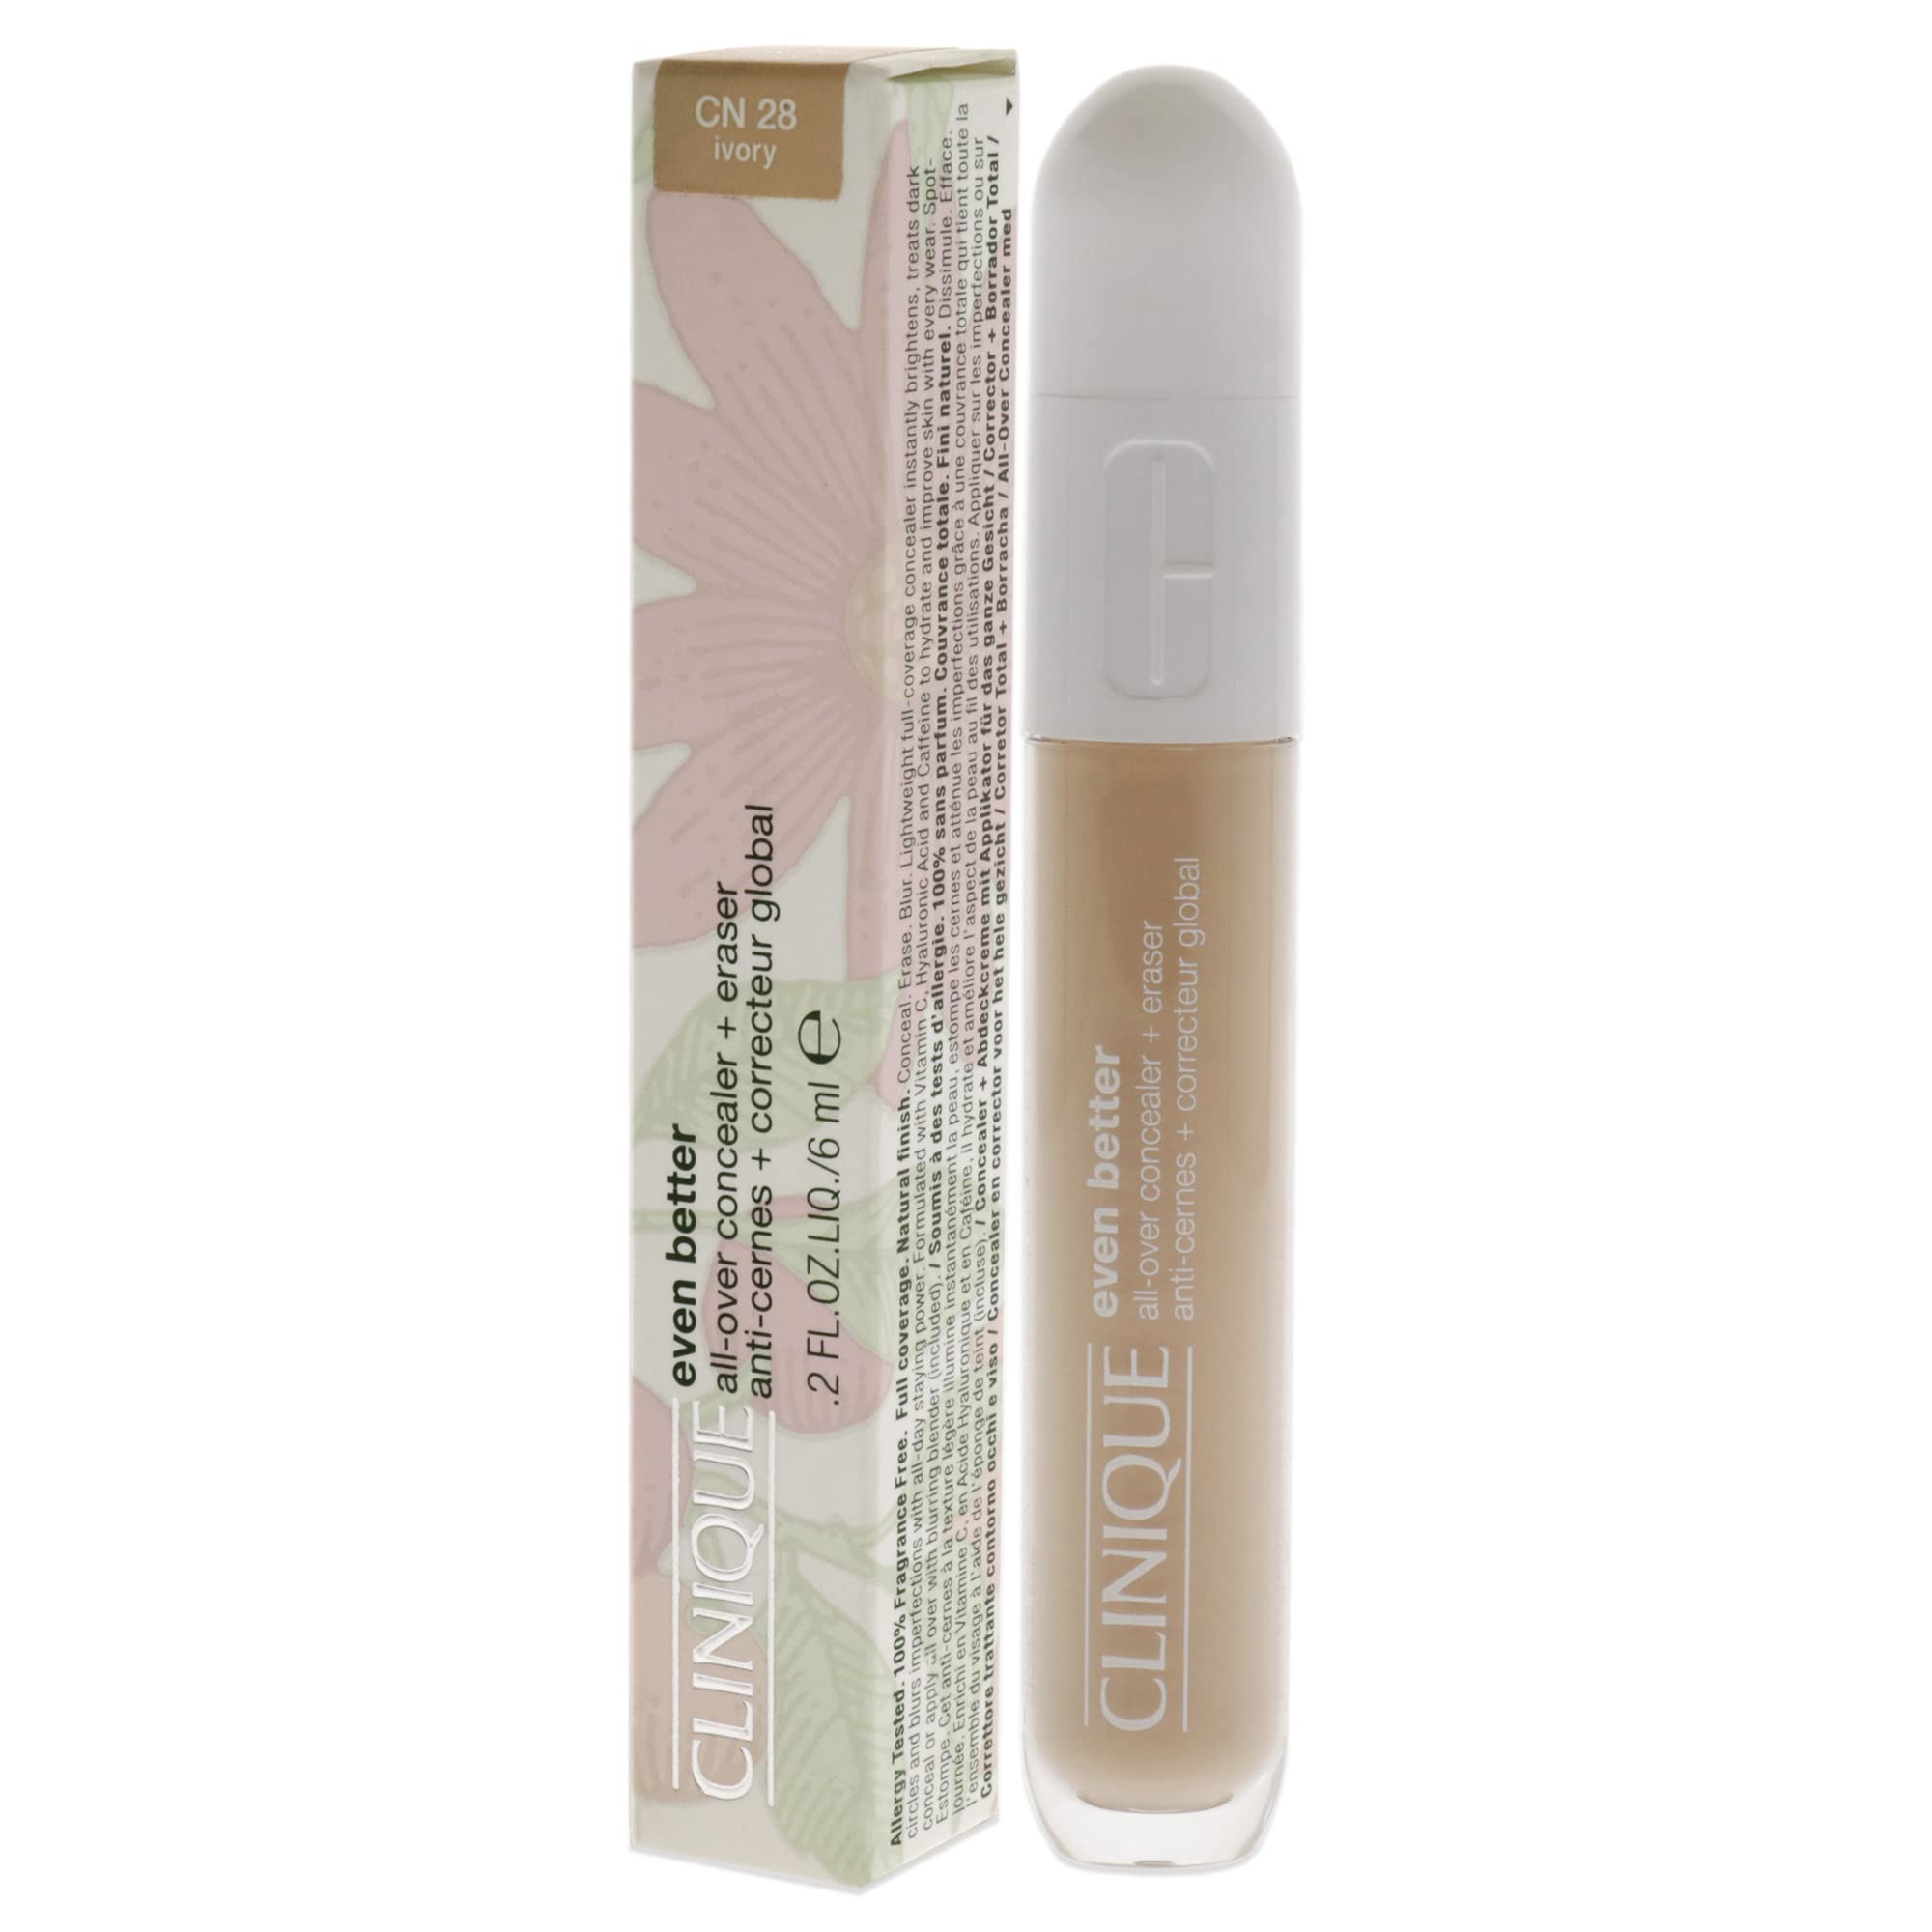 Clinique Even Better All-Over Concealer Plus Eraser - CN 28 Ivory Concealer Women 0.2 oz